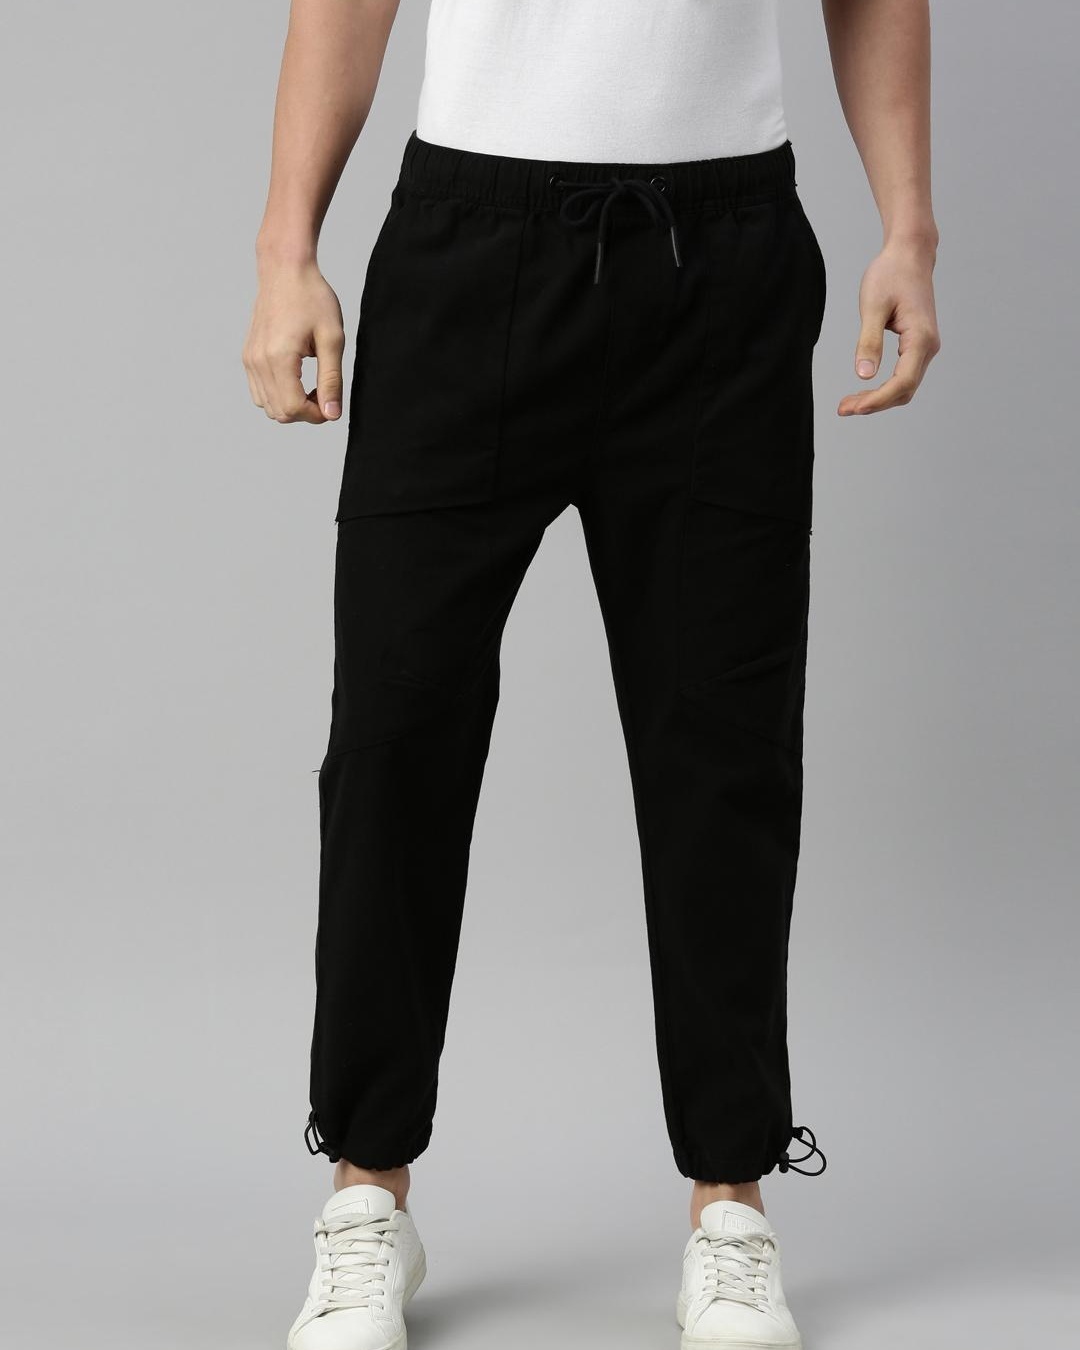 Buy Men's Black Slim Fit Trousers Online at Bewakoof